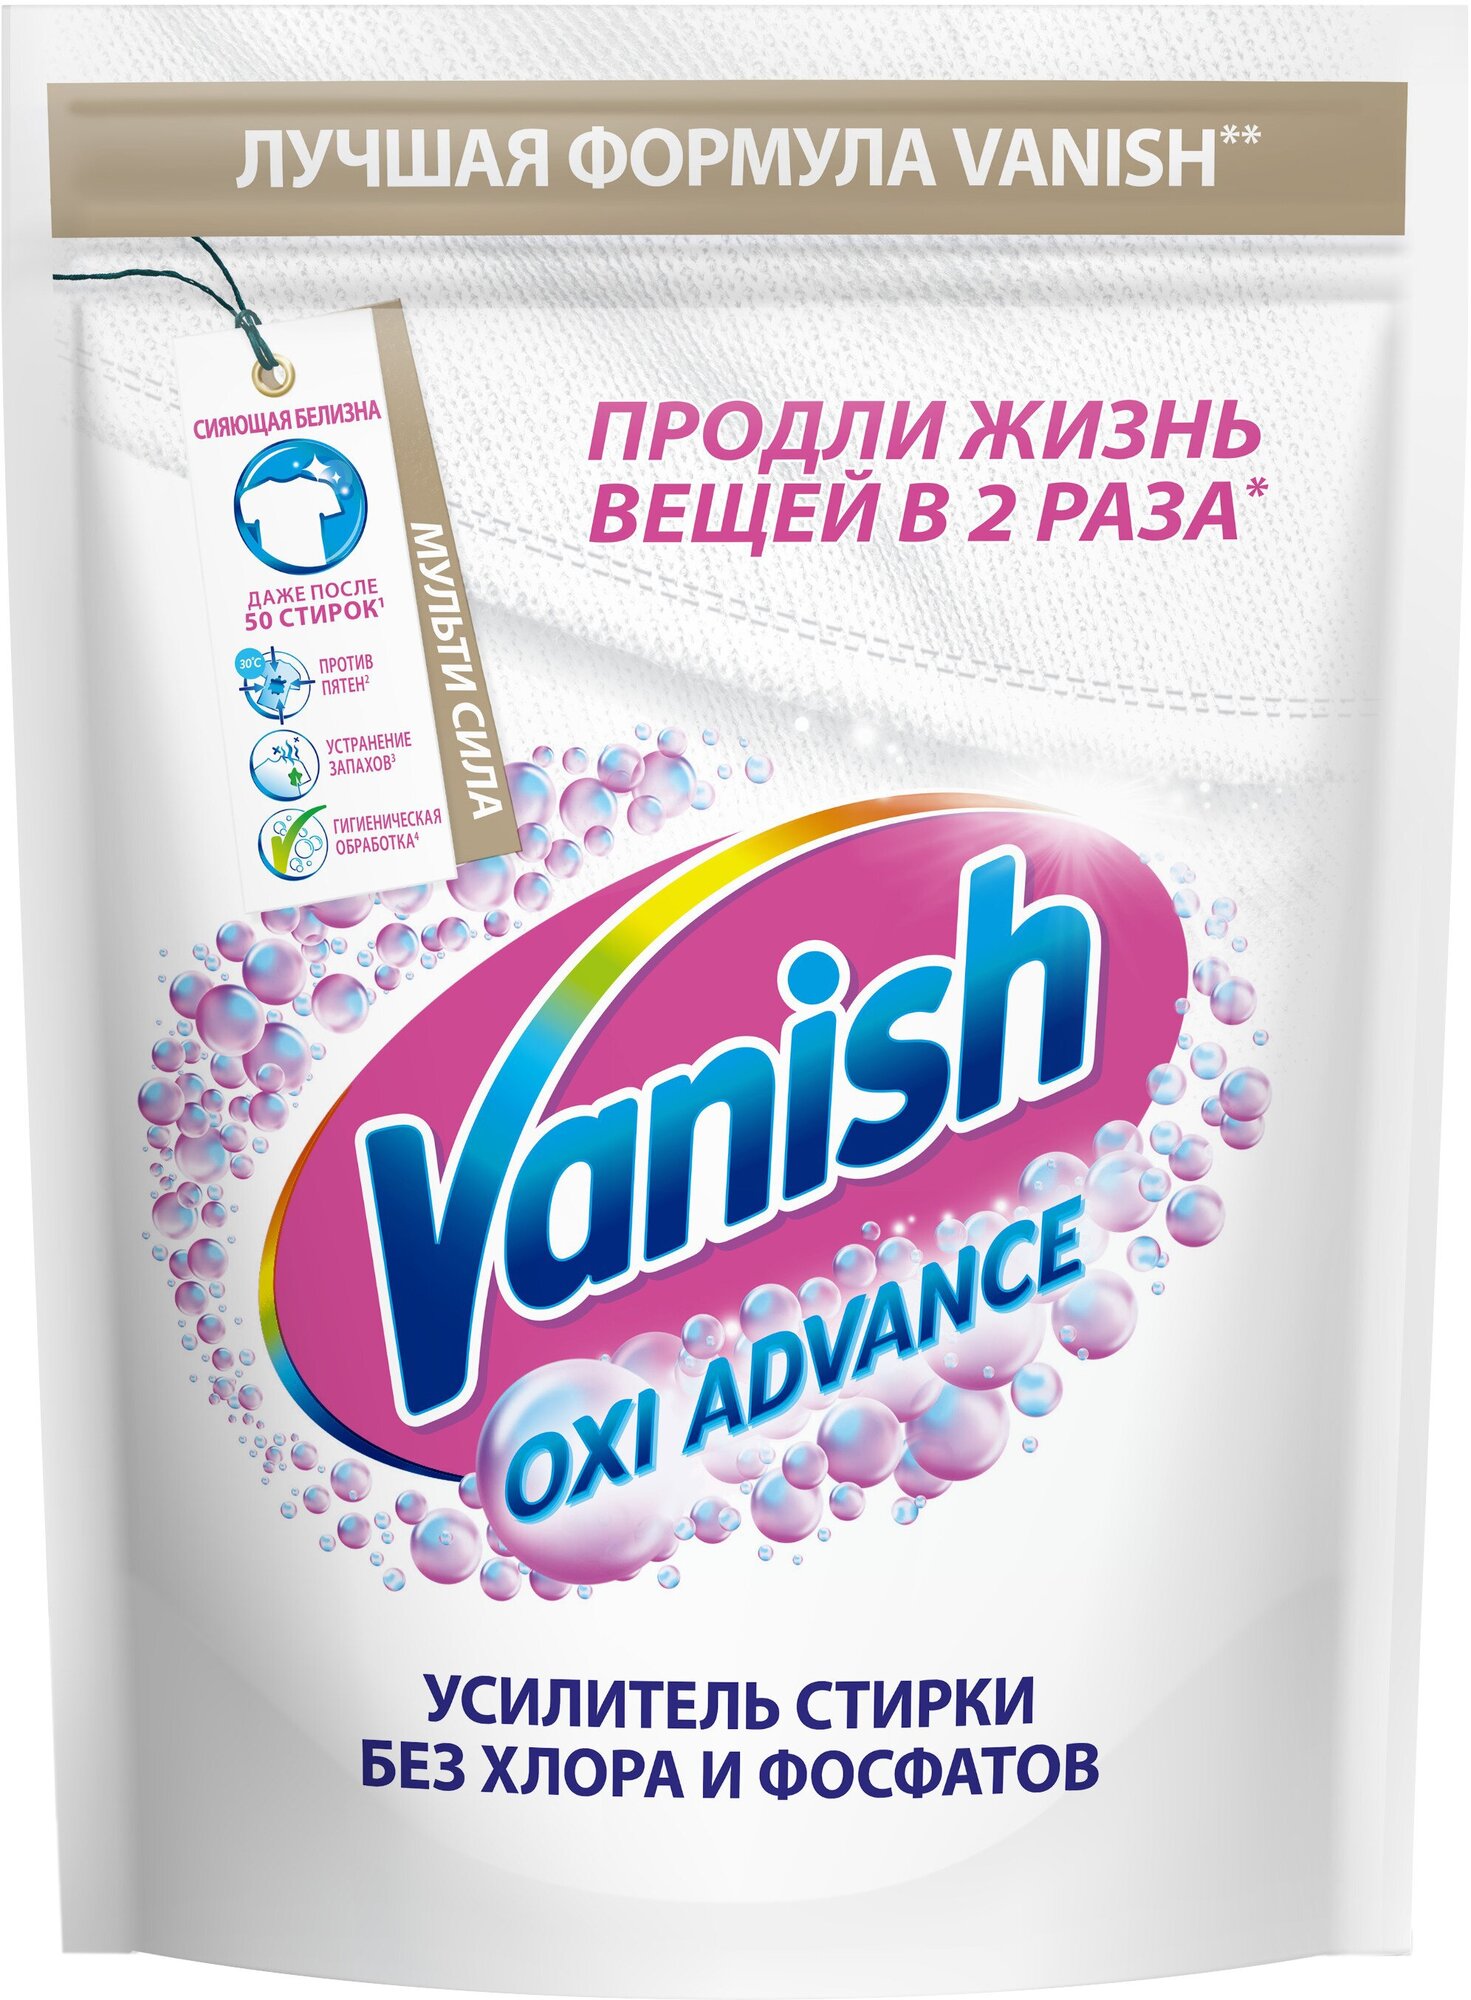 Отбеливатель Vanish Oxi Advance для белой ткани Порошок